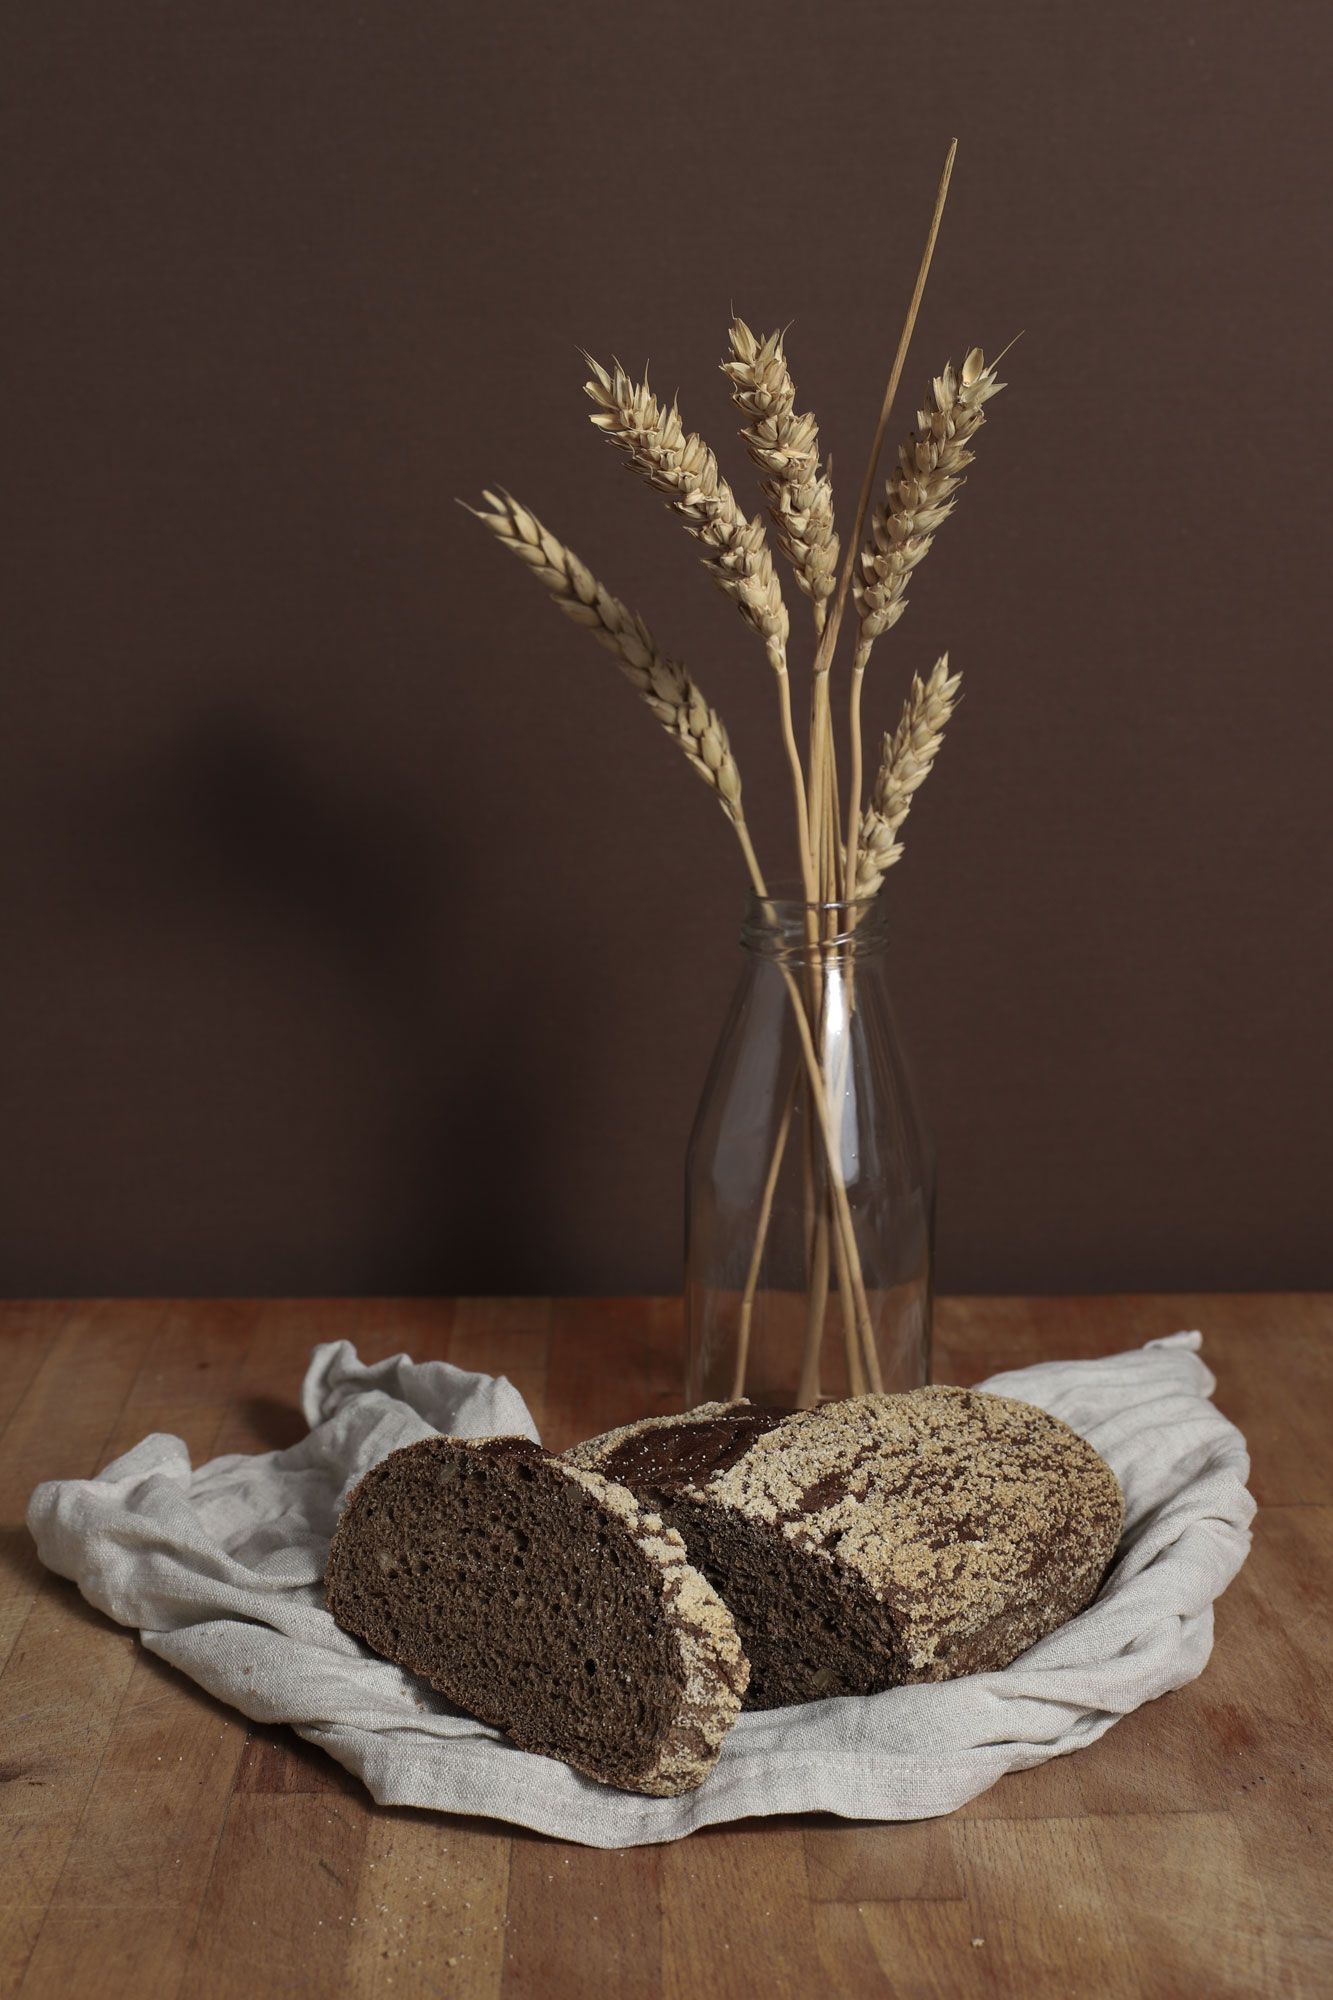 хлеб,пшеница,деревня,пастораль,натюрморт, Соколова Ирина